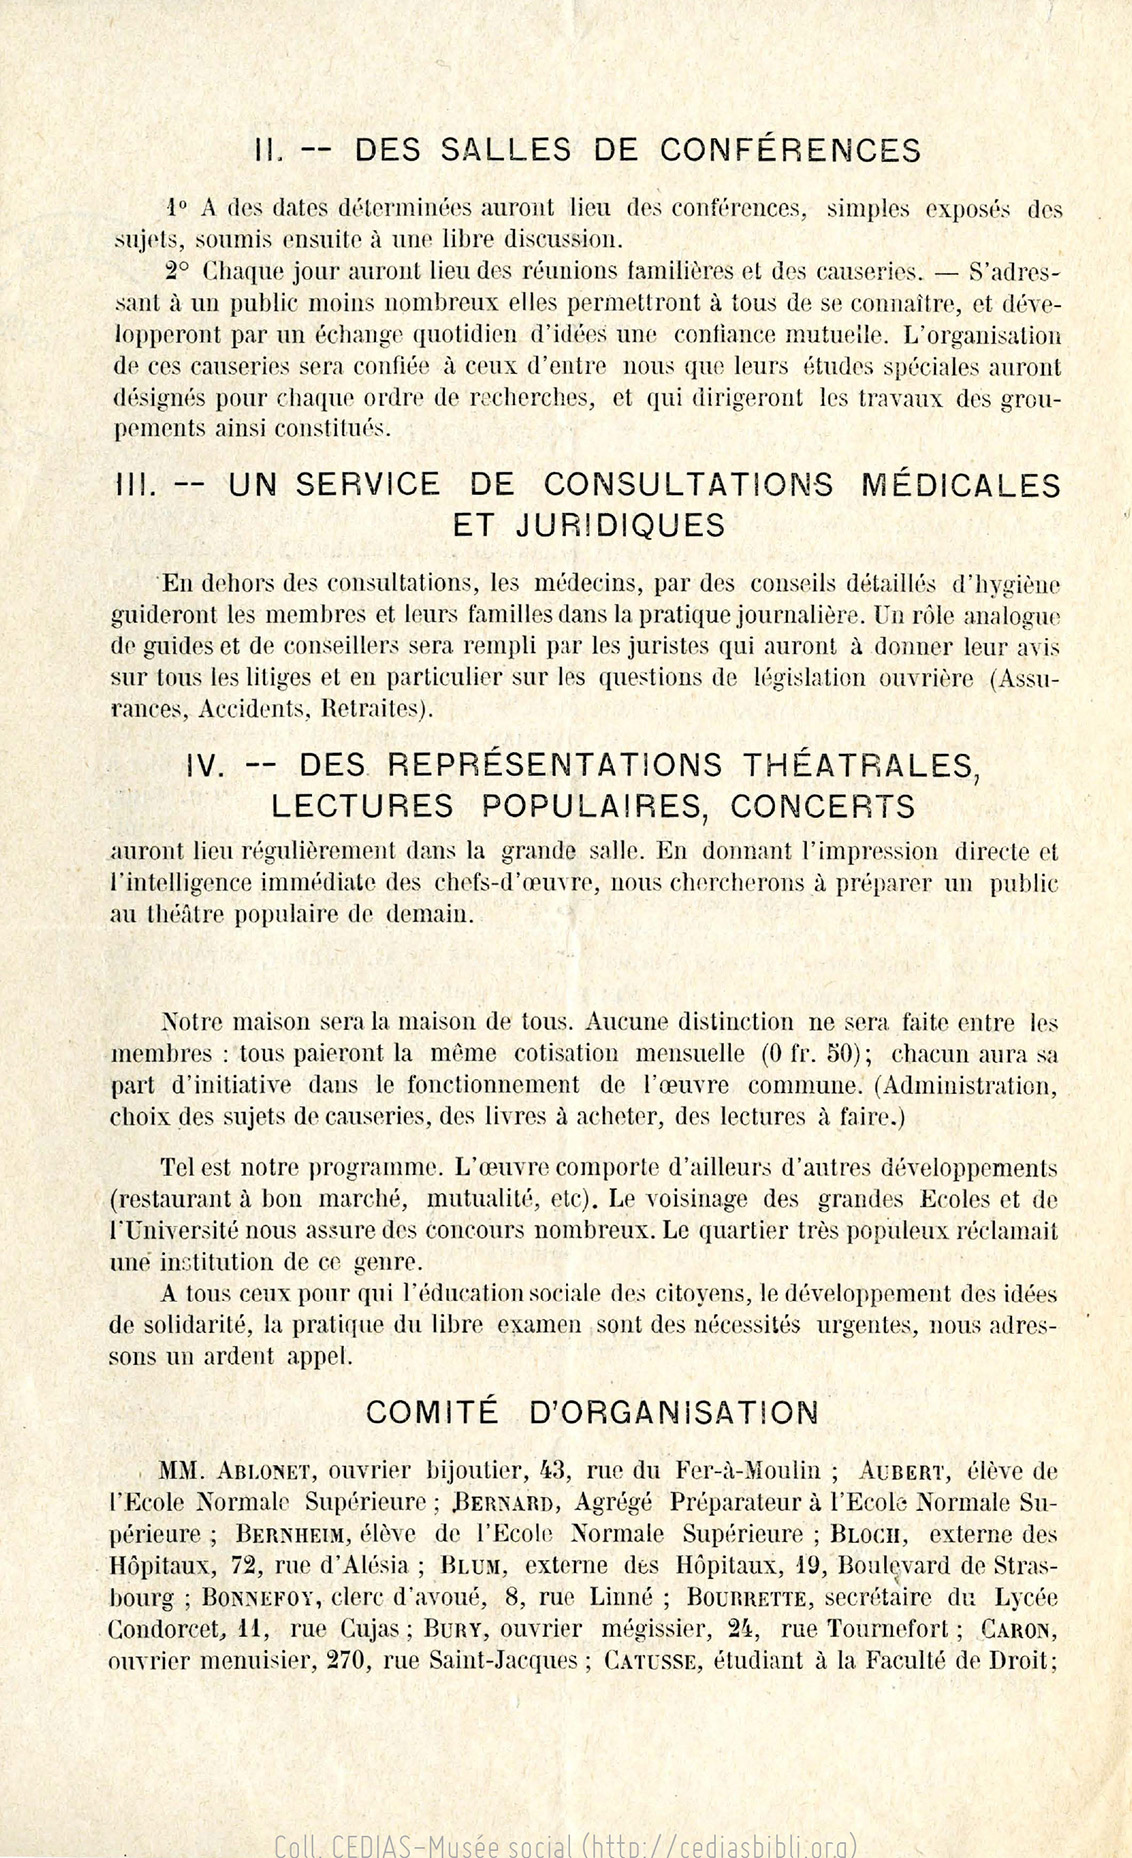 Union de la rue Mouffetard : Université Populaire du Ve arrondissement, 76 rue Mouffetard, tract, 1902